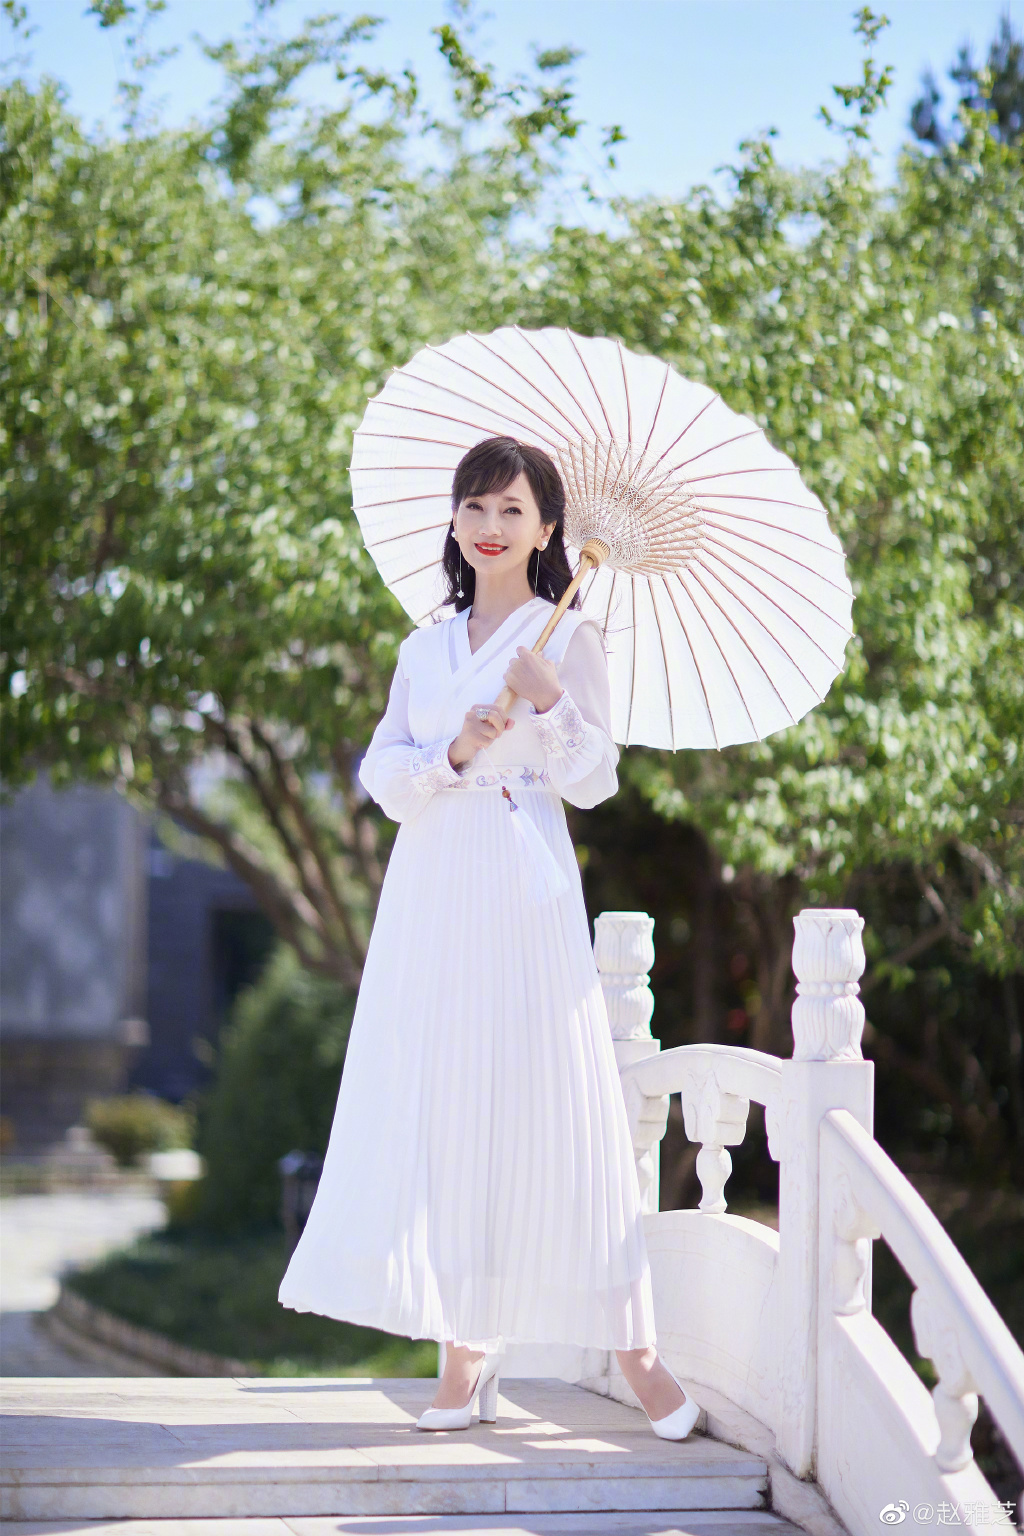 赵雅芝穿白色长裙 撑油纸伞气质迷人